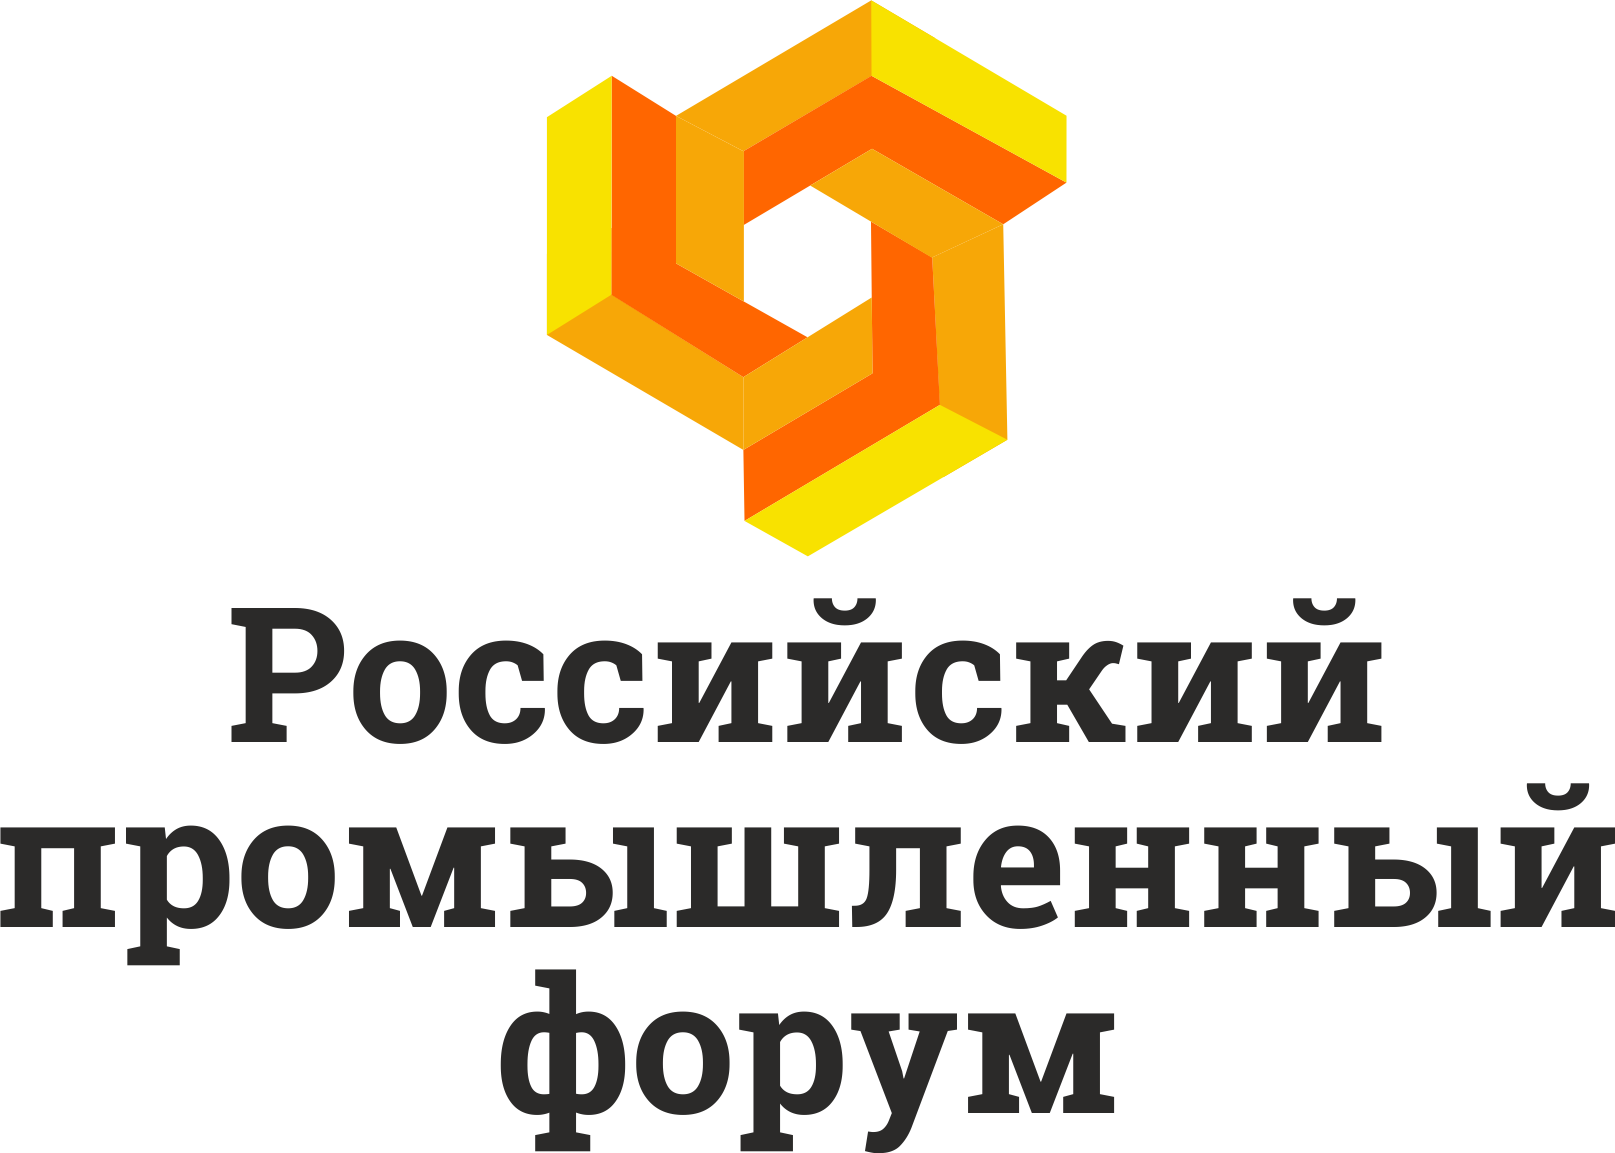 Информация о программе Российского промышленного форума, 26-28 февраля 2019 г. Республика Башкортостан РПФ2.png